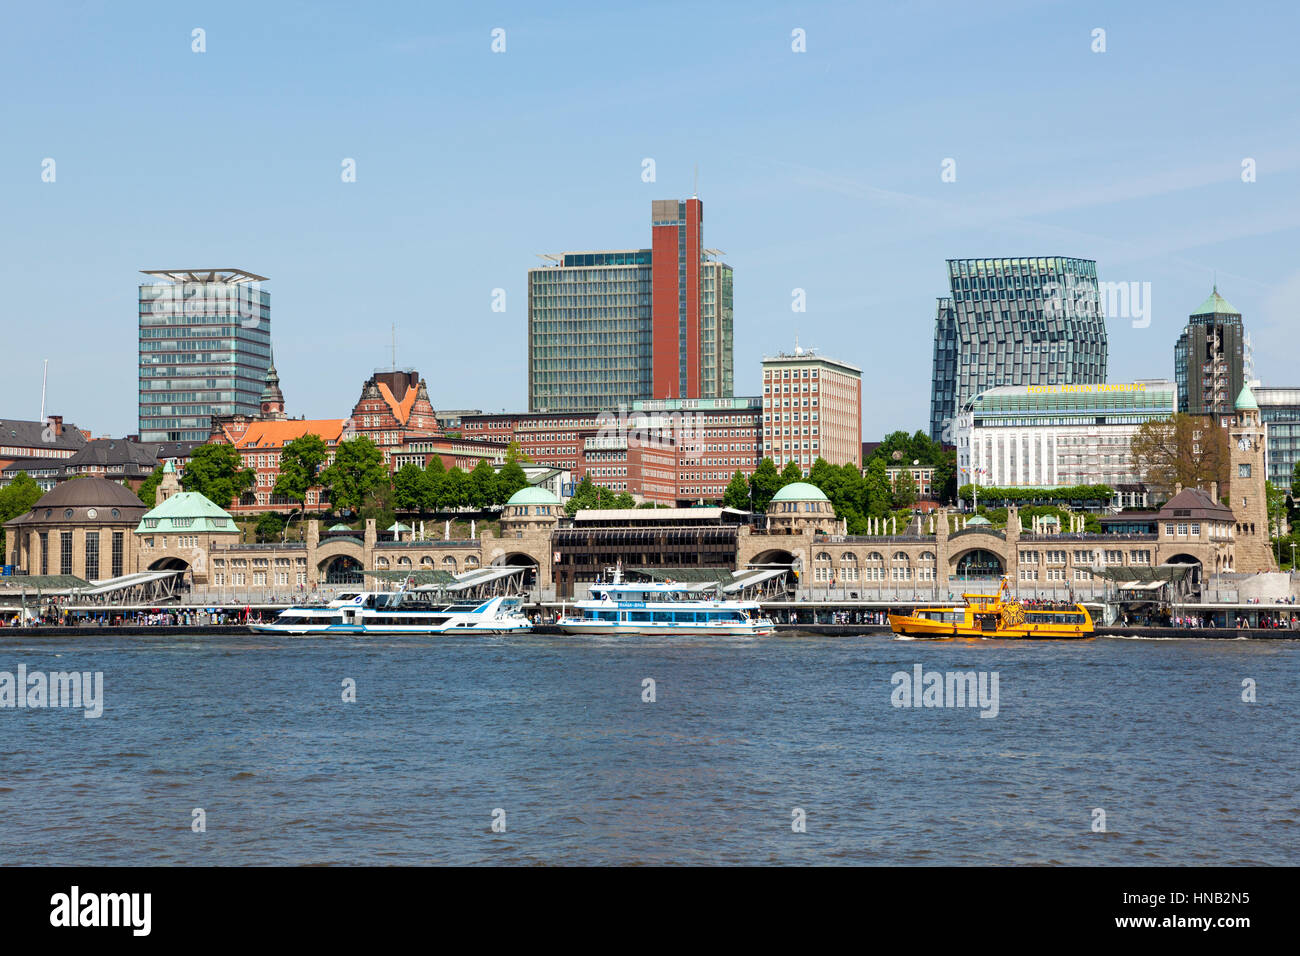 Hamburgo, Alemania - 19 de mayo de 2015: El St. Pauli muelles sobre el río Elba, el mayor lugar de desembarco en el puerto de Hamburgo Foto de stock